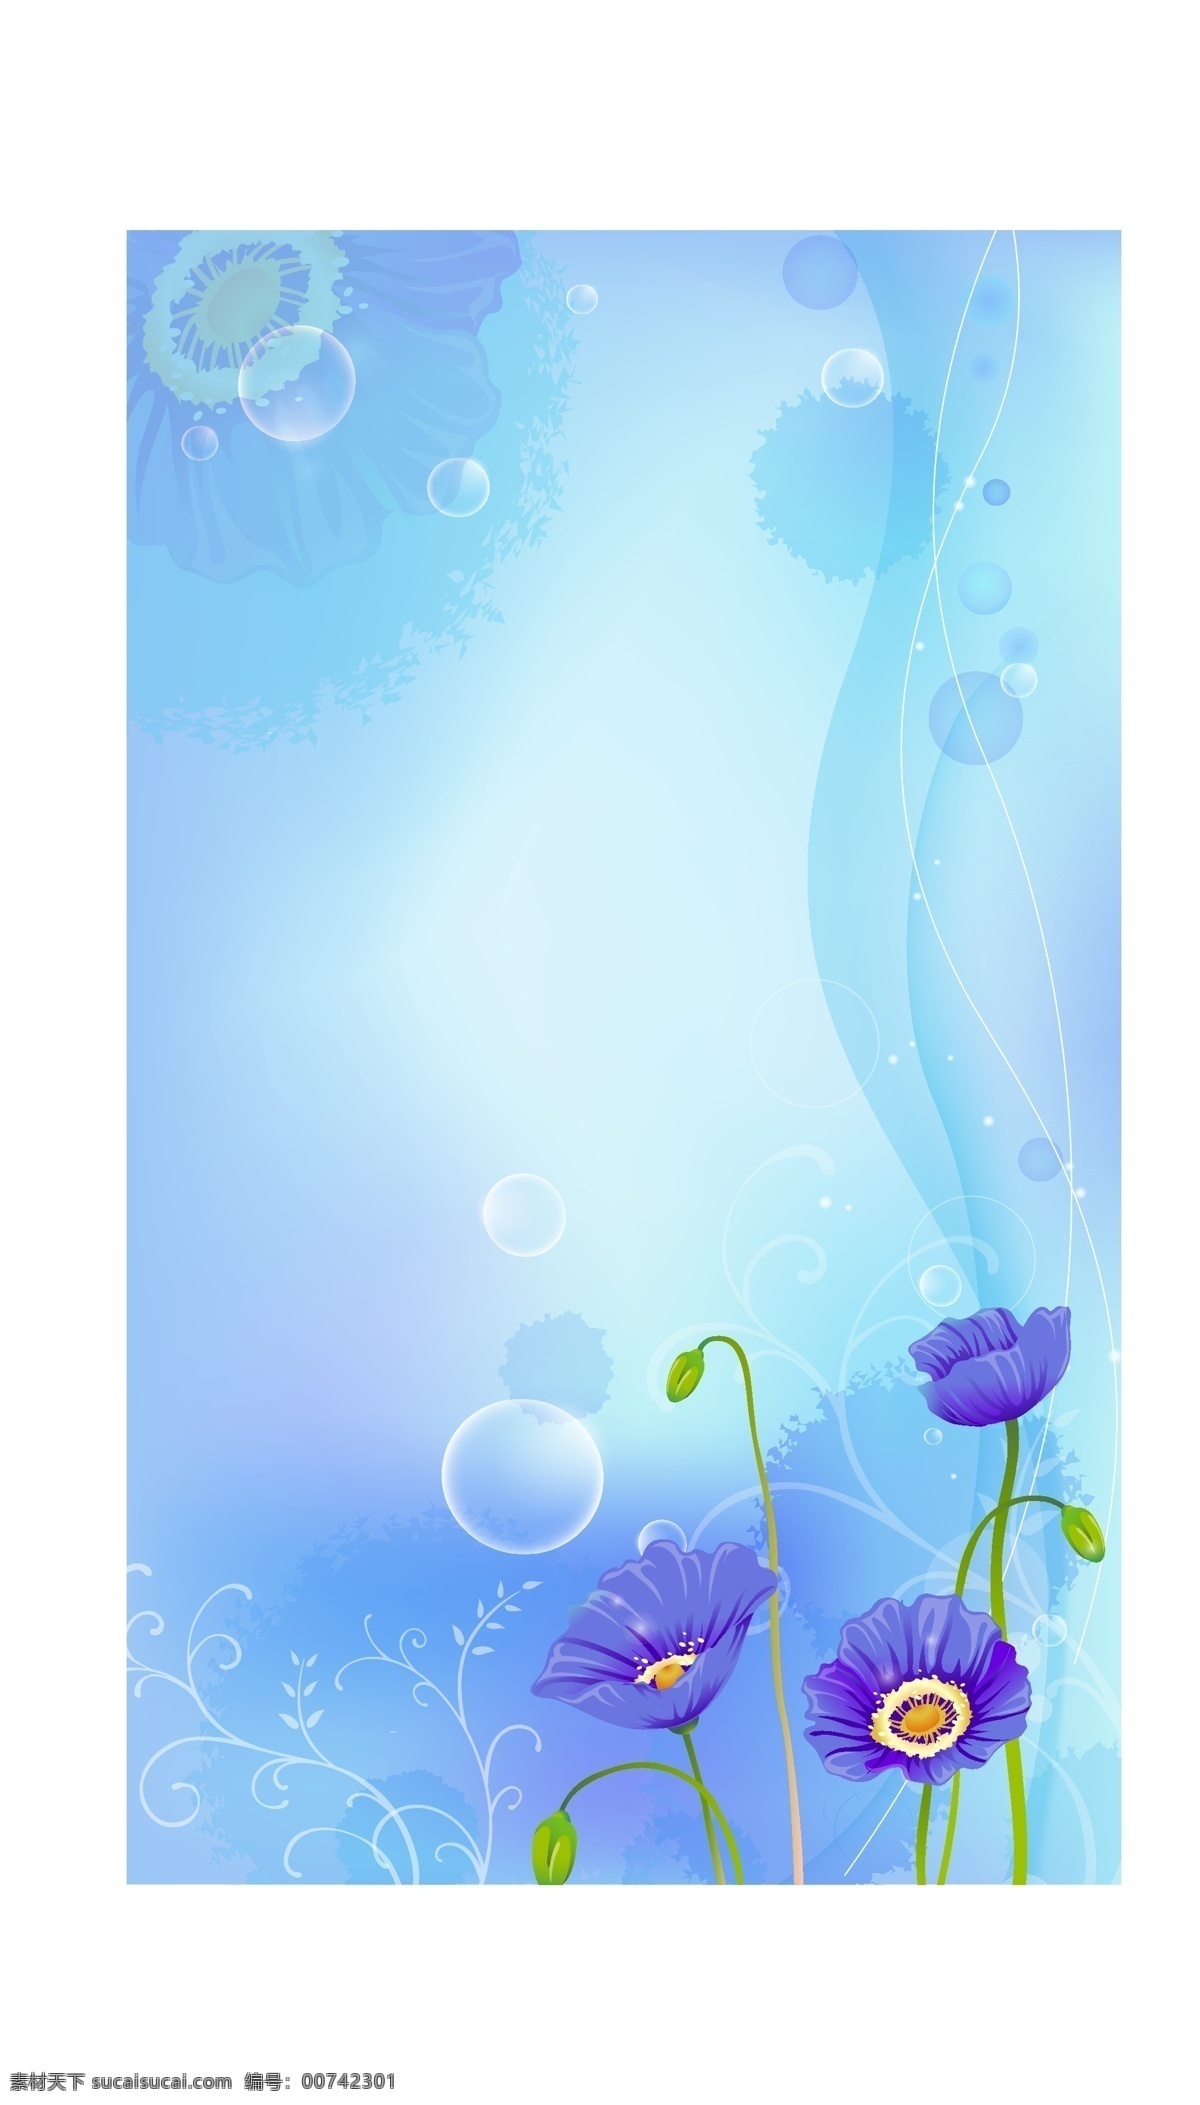 蓝色 花朵 背景图片 梦幻花朵背景 梦幻花朵 背景 矢量花朵 蓝色小花 浪漫背景 藤蔓 唯美花朵 花草 植物 生物 花朵模板 花纹花边 花朵底纹 节日素材 暗花